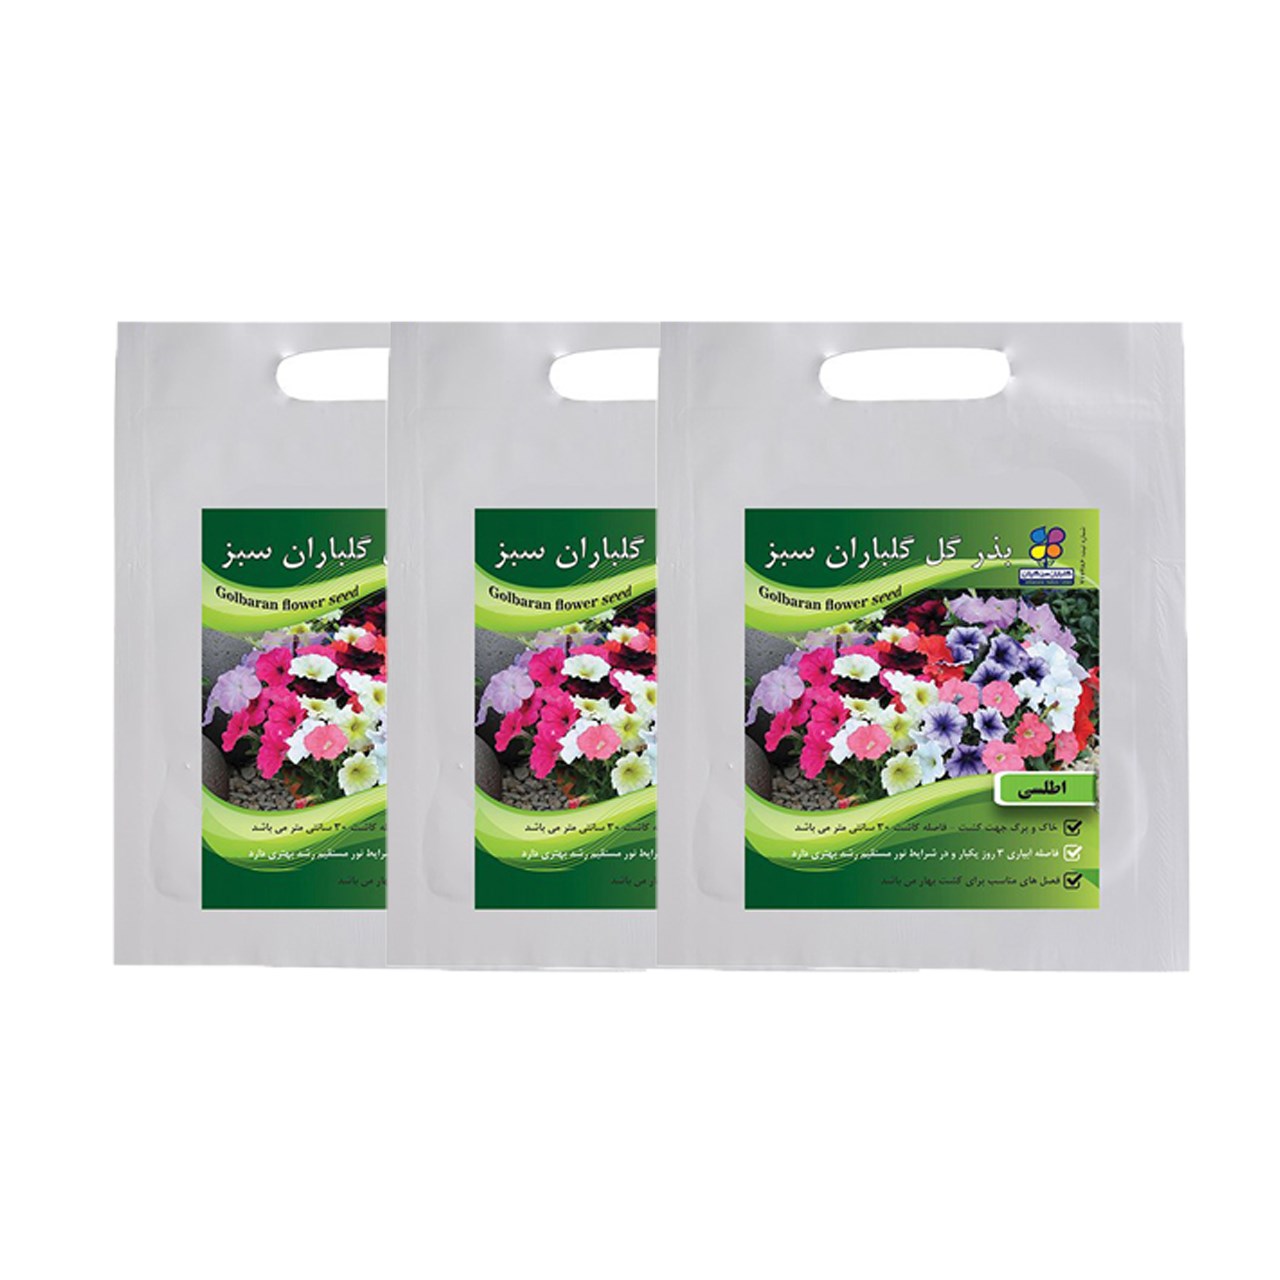 مجموعه بذر گل اطلسی گلباران سبز بسته 3 عددی